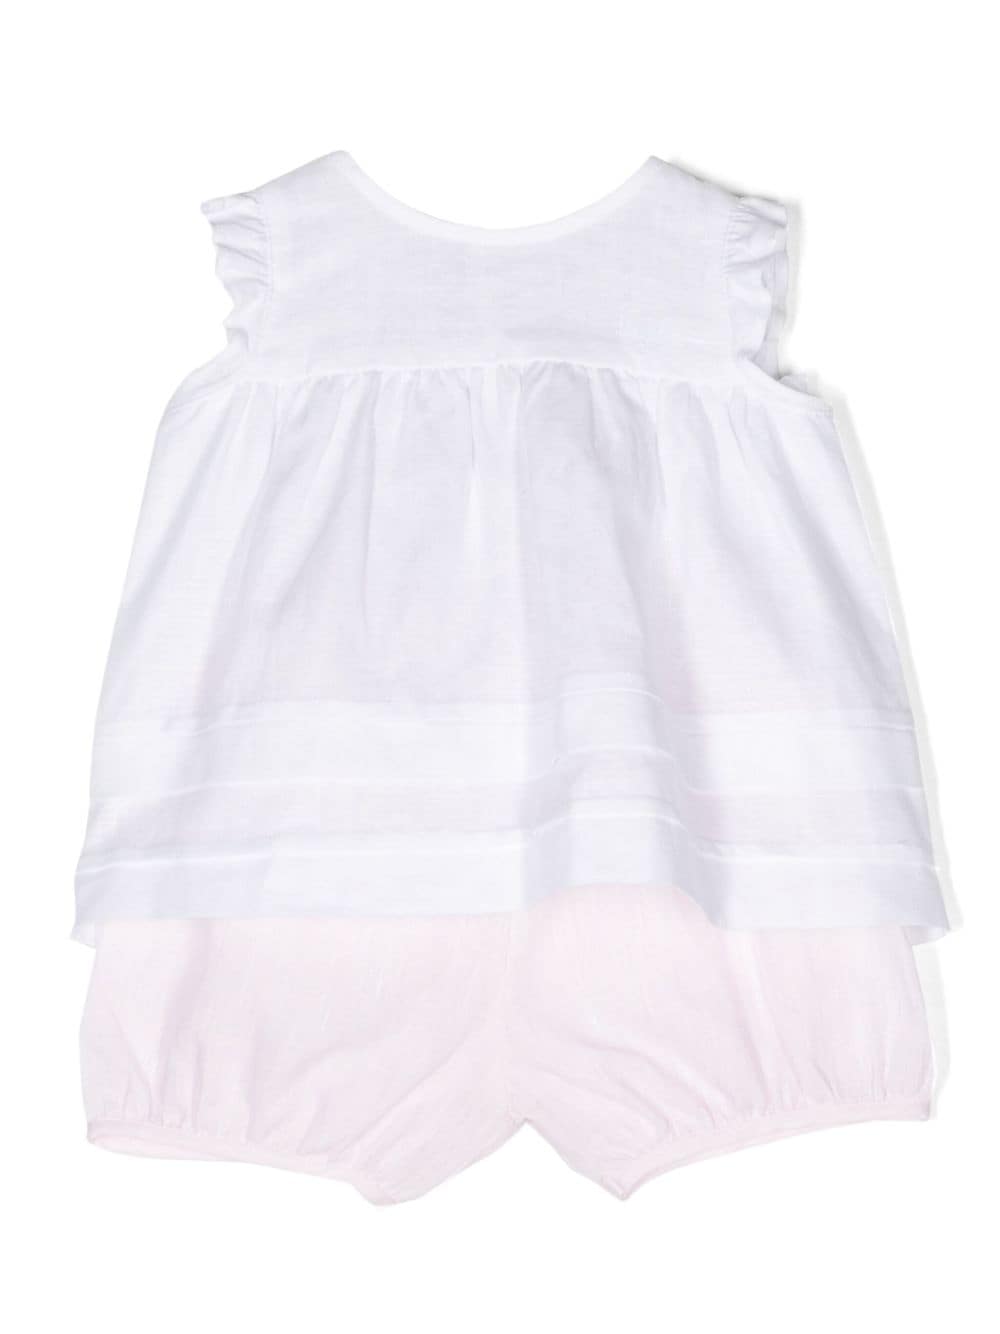 Completo neonata blusa/ short lino